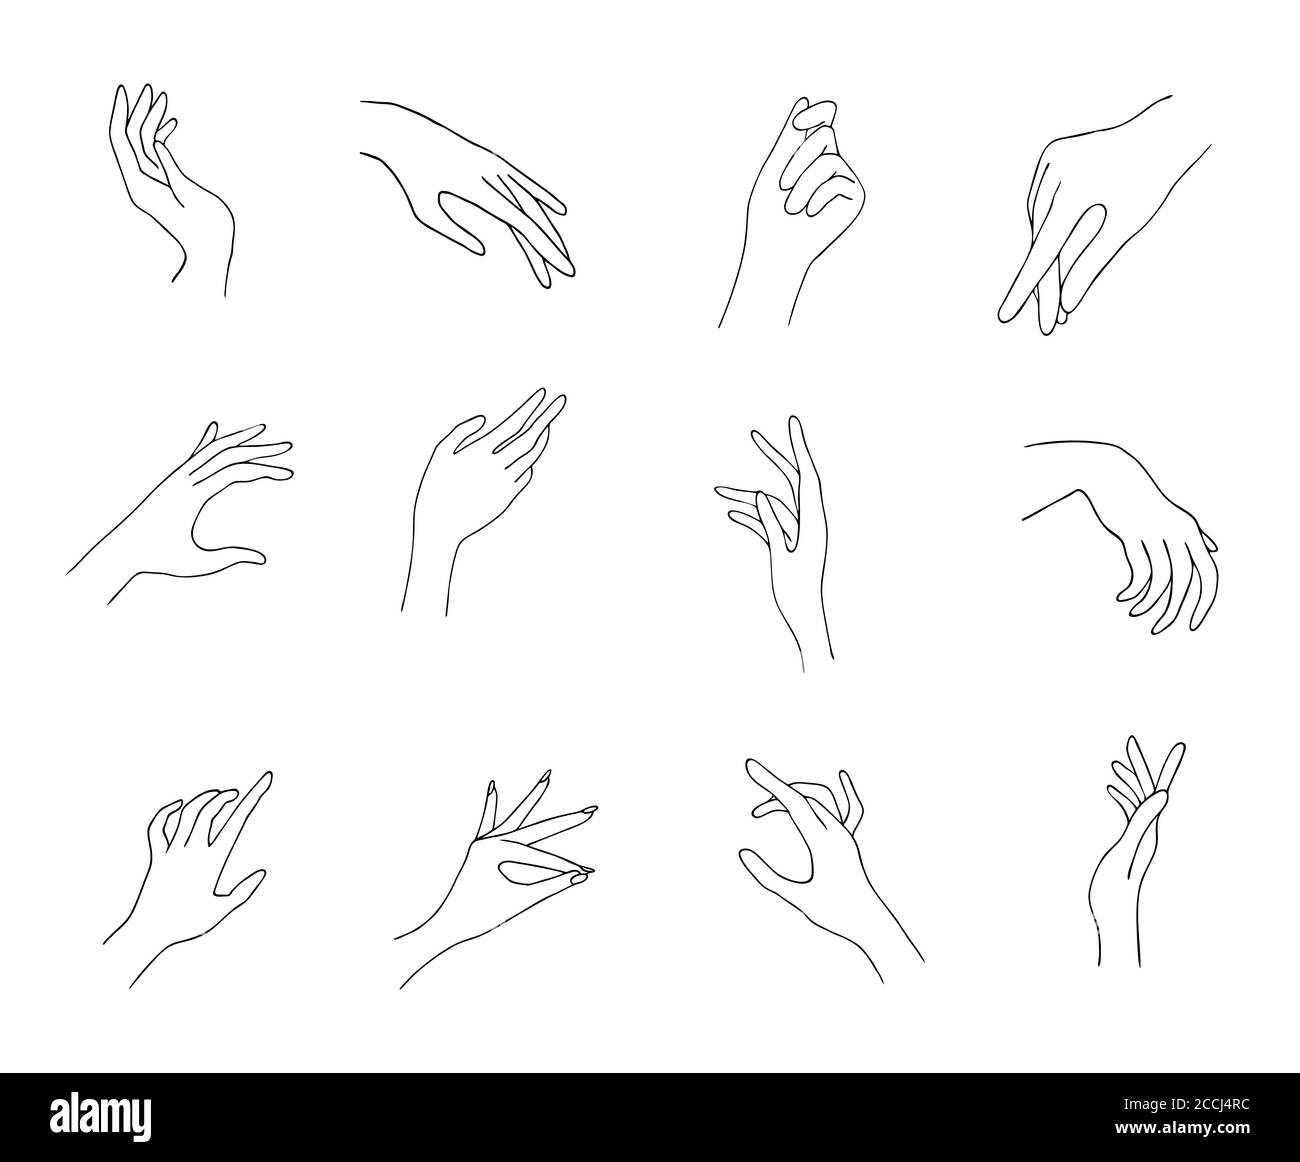 Icônes de main pour femmes. Des mains féminines élégantes de gestes différents. Lineart dans un style tendance minimaliste. Illustration vectorielle. EPS10. Illustration de Vecteur